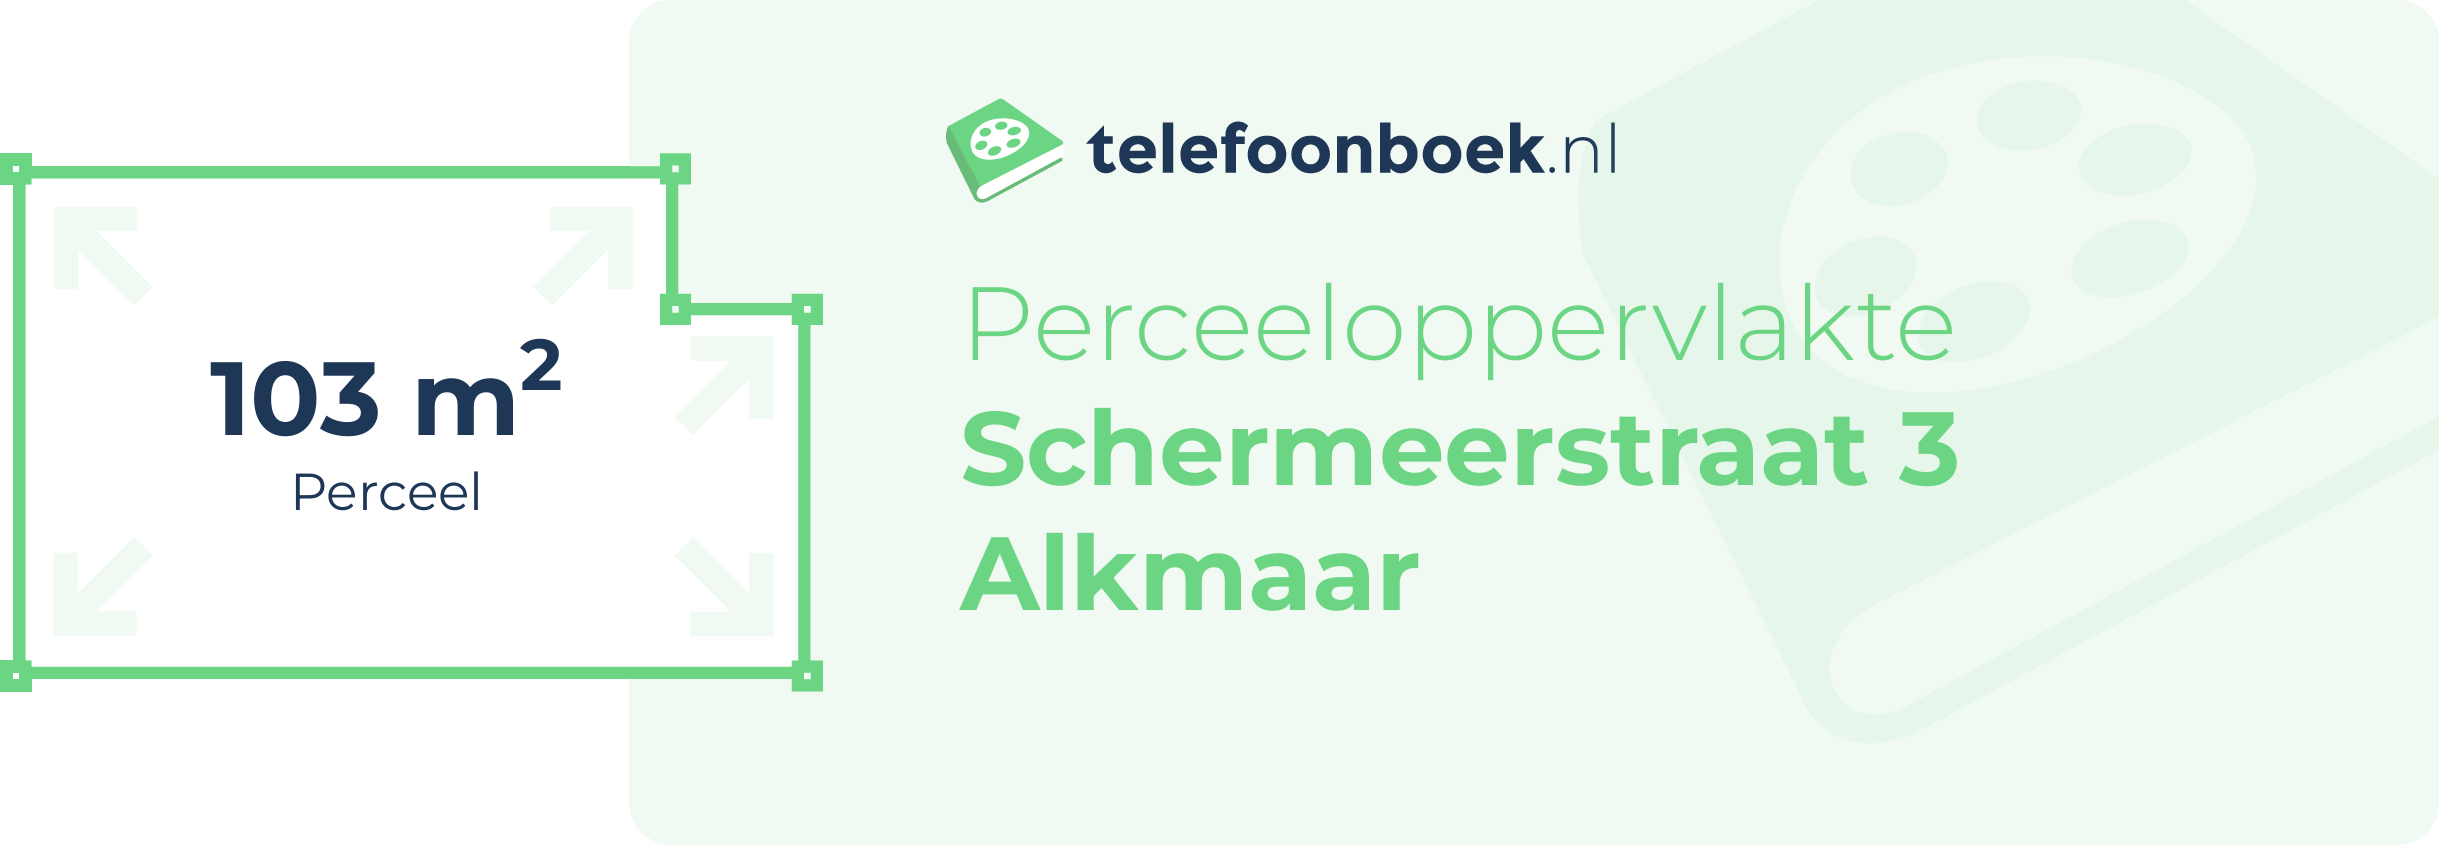 Perceeloppervlakte Schermeerstraat 3 Alkmaar